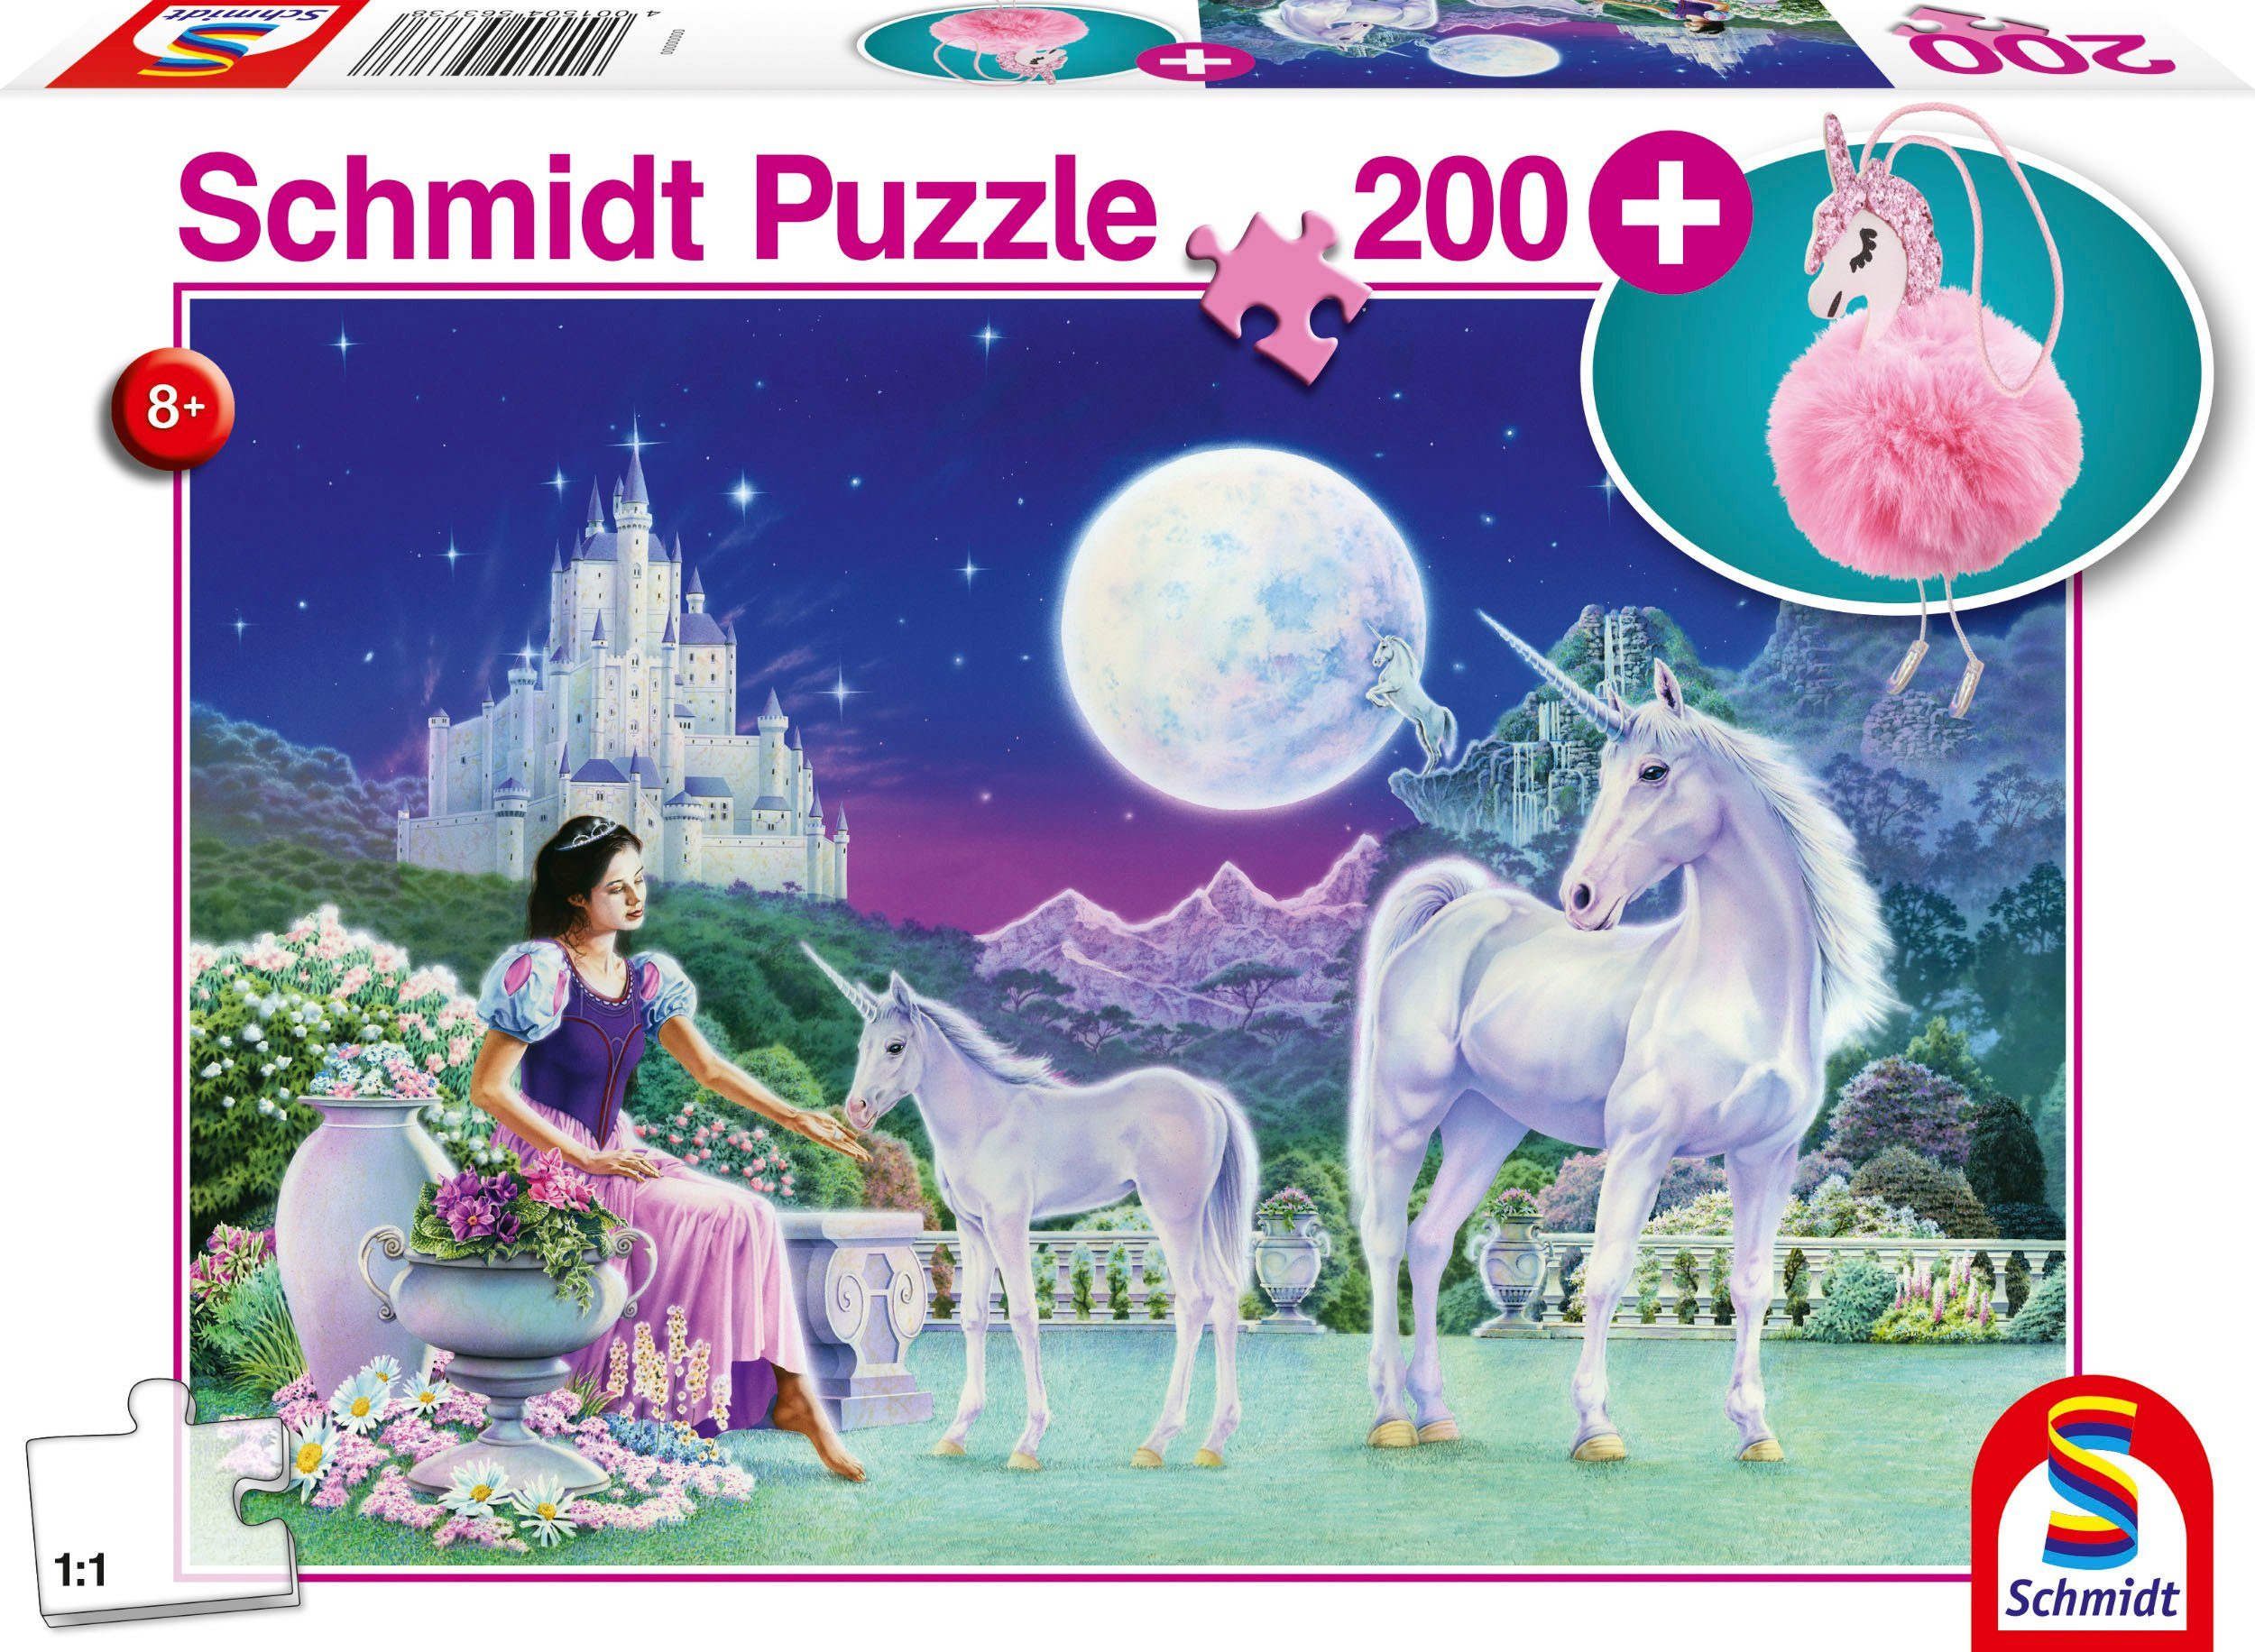 Europe 200 in Made Schmidt Einhorn, Puschel-Anhänger; Puzzleteile, Puzzle mit Spiele